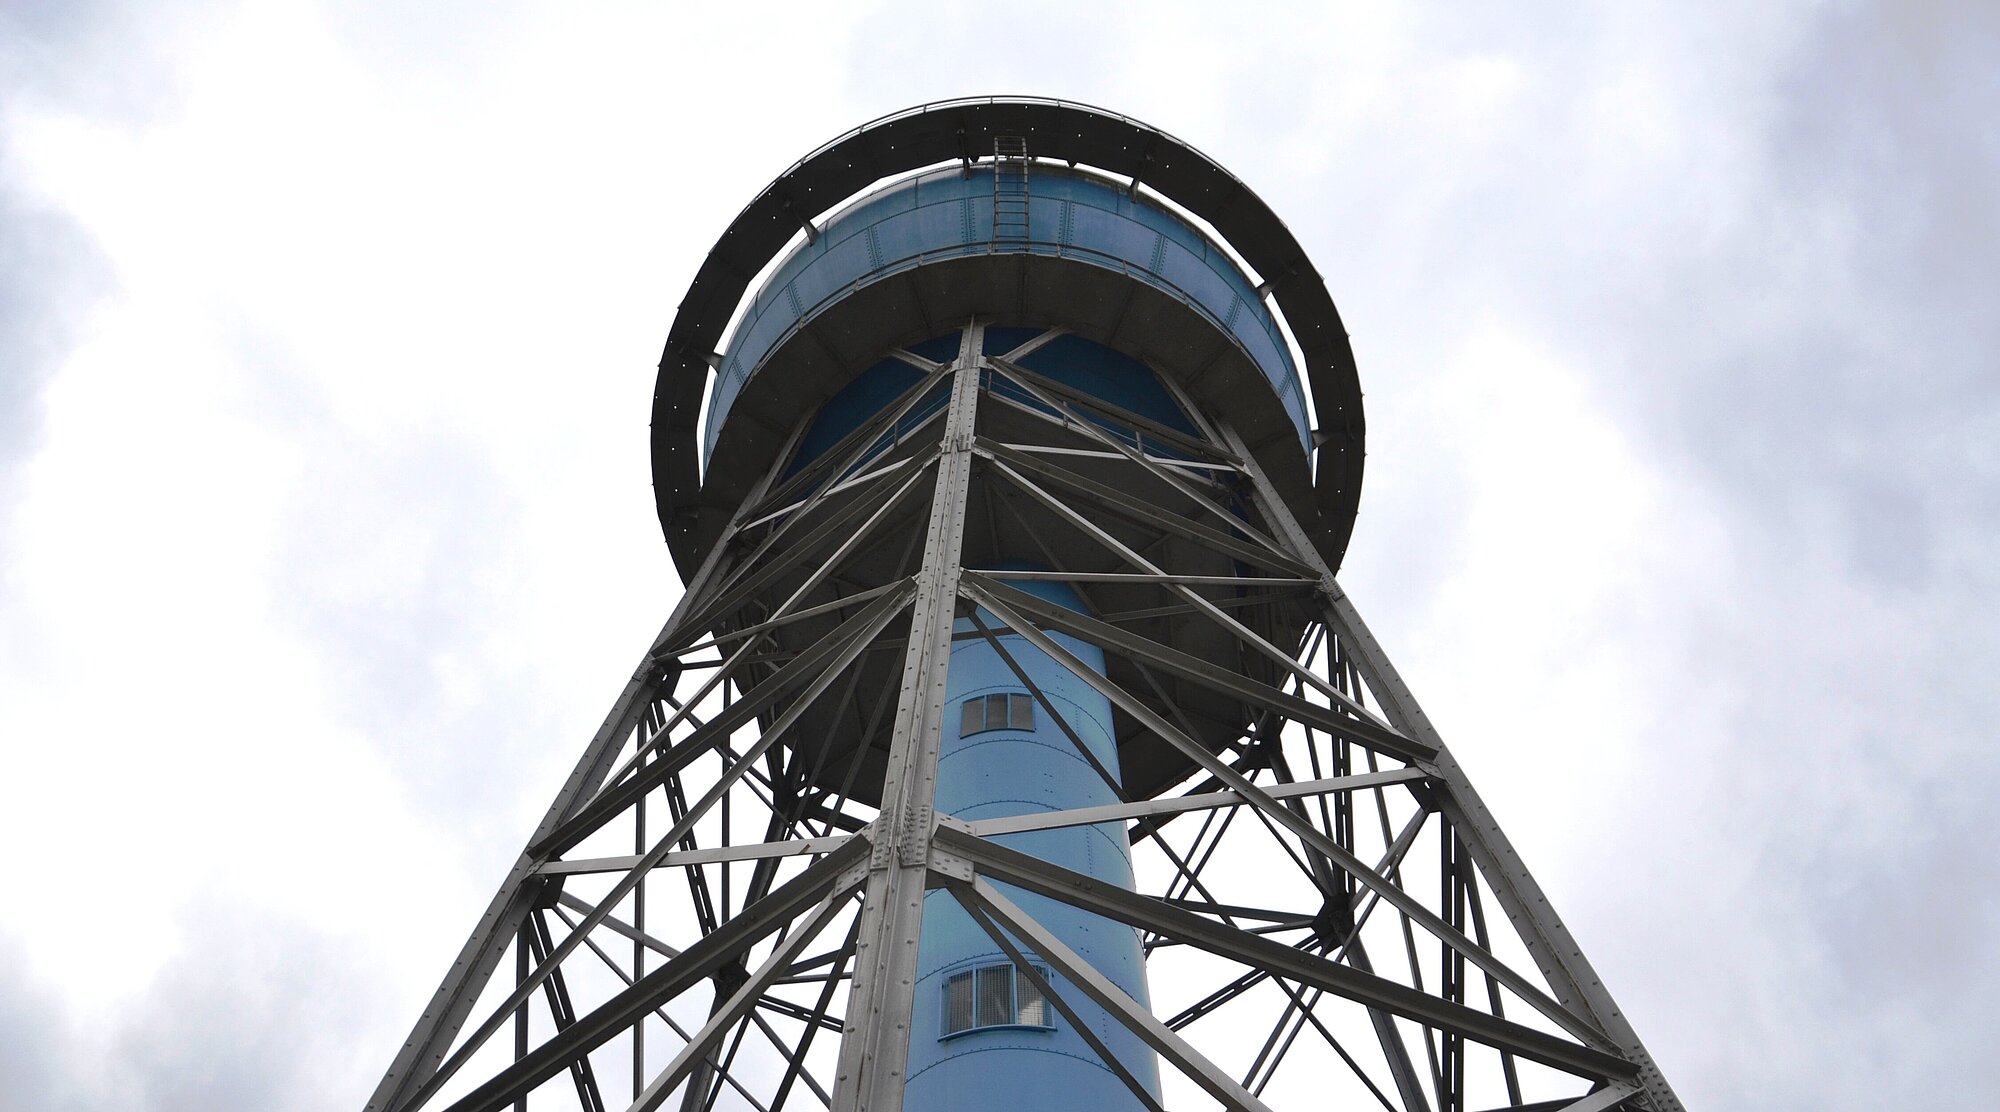 Foto: Blauer Wasserturm mit Blick von unten